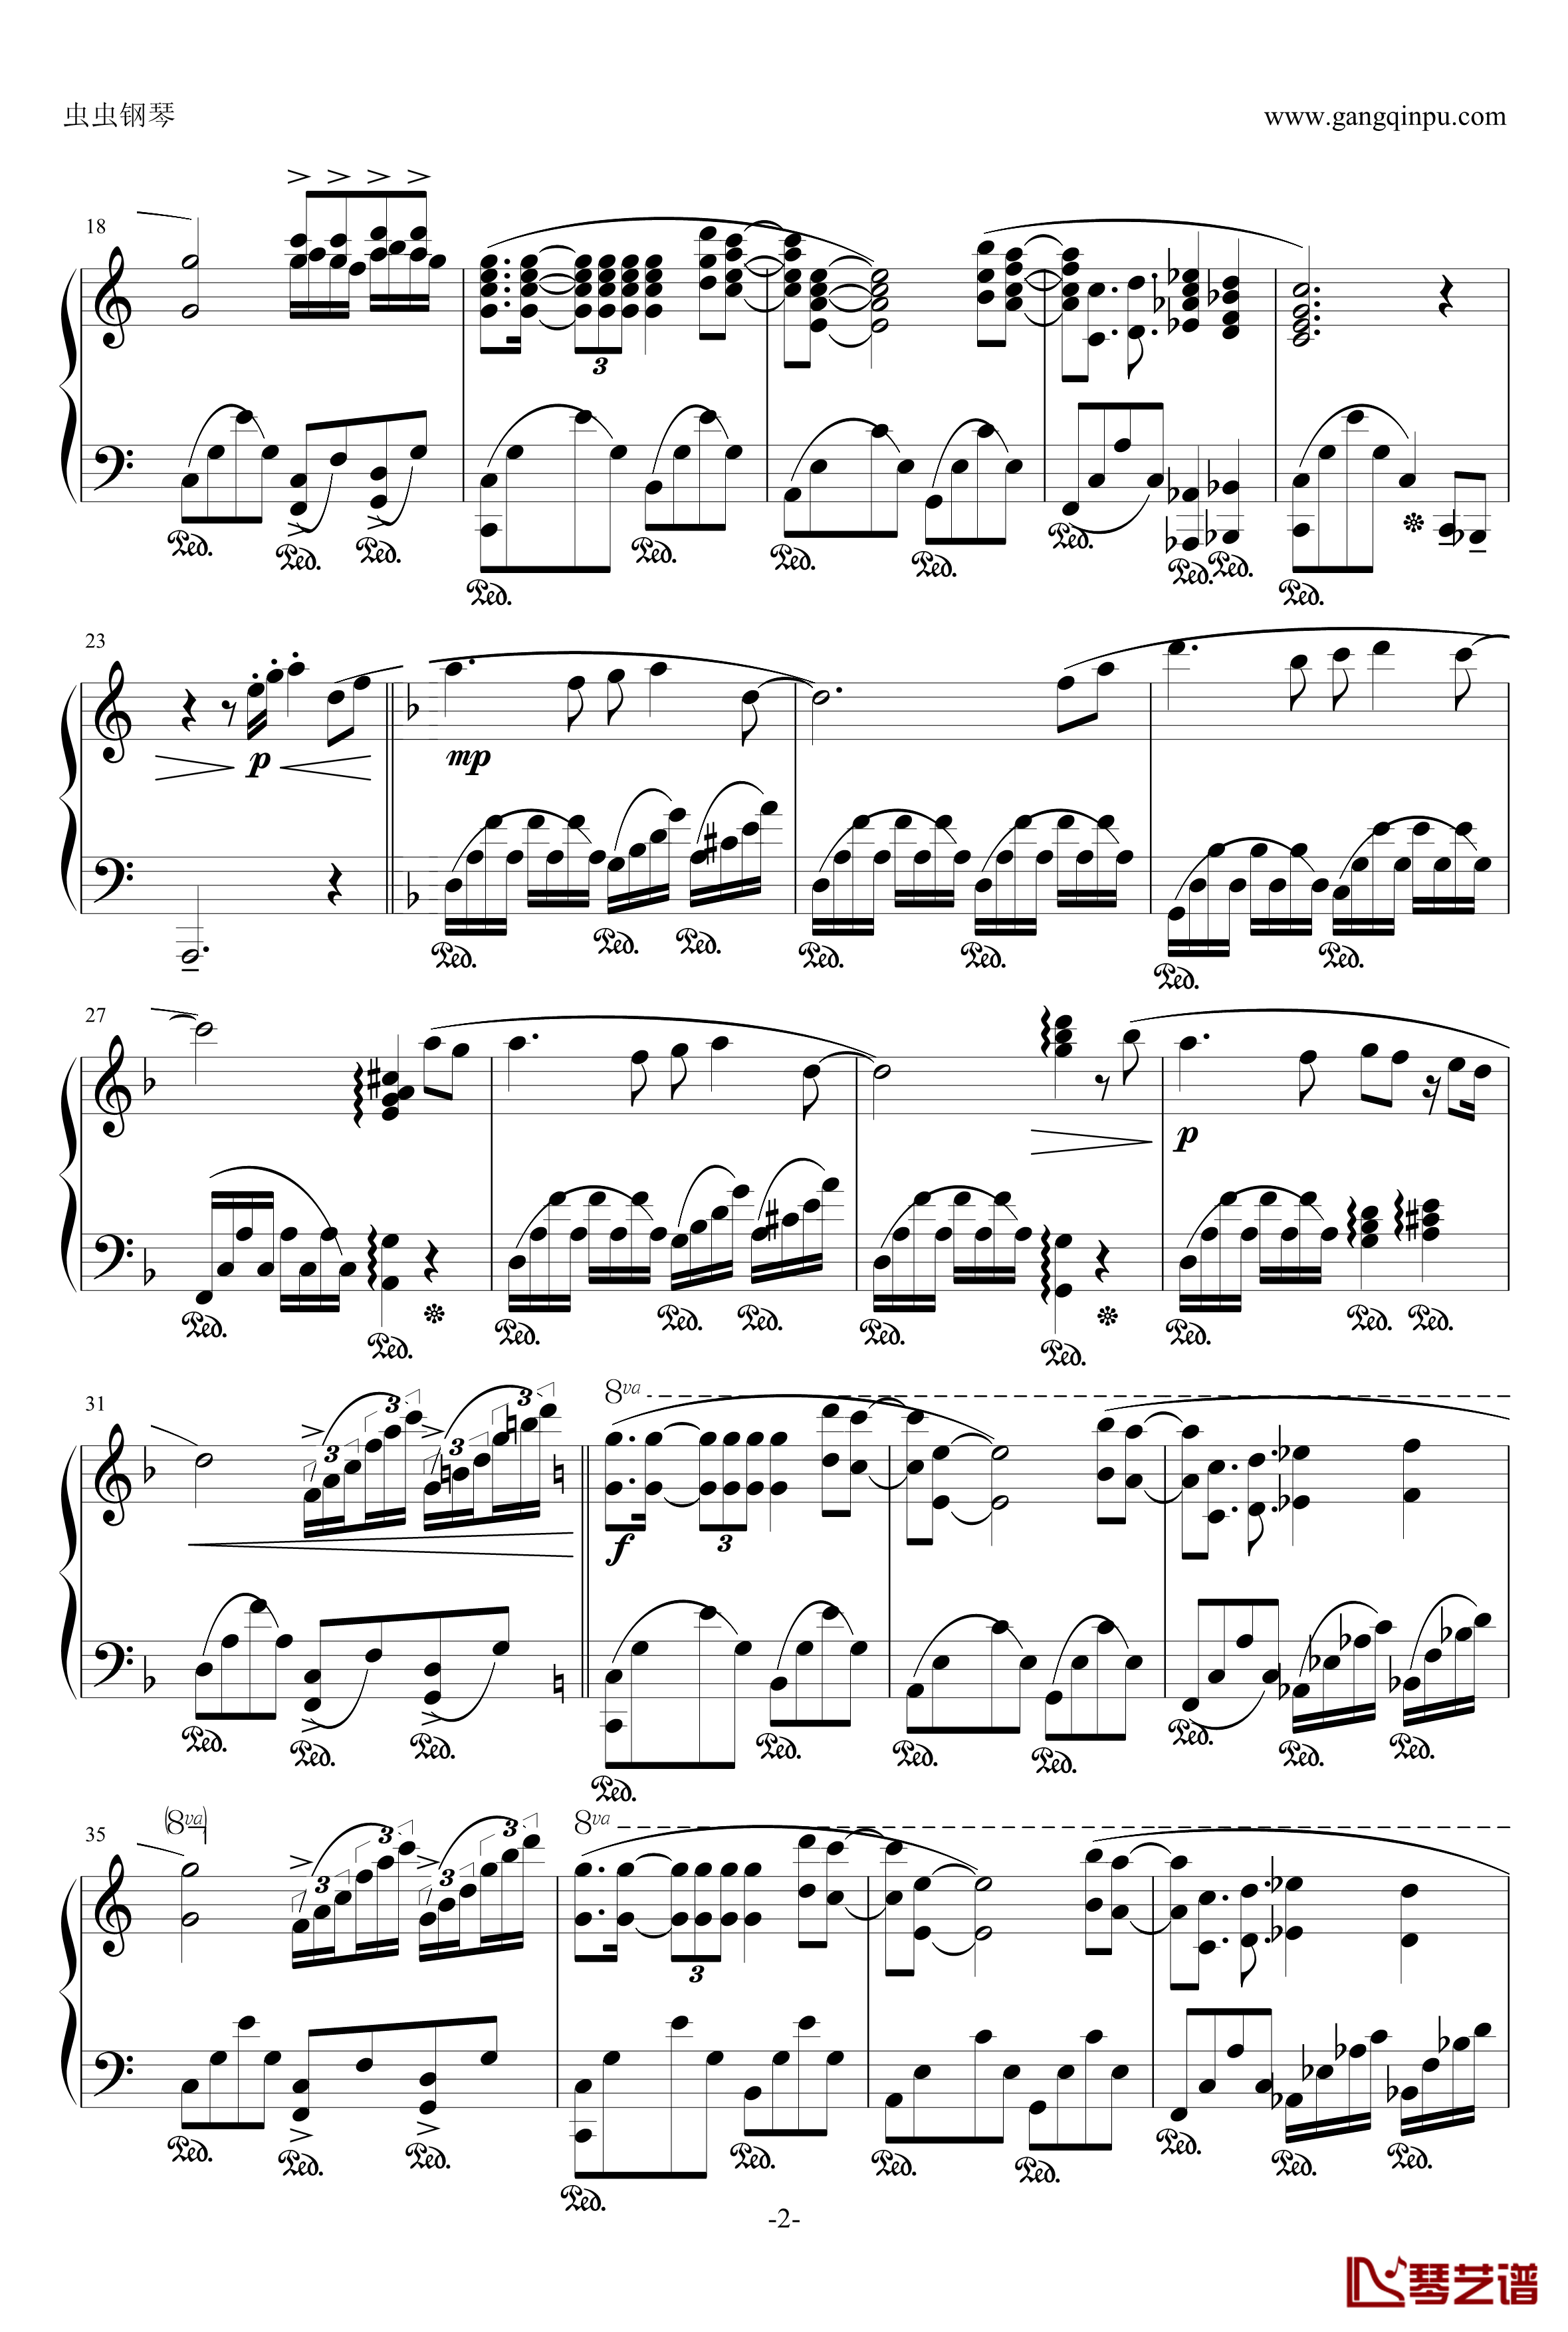 伊甸园奇境钢琴谱-1983日本现场版-克莱德曼2